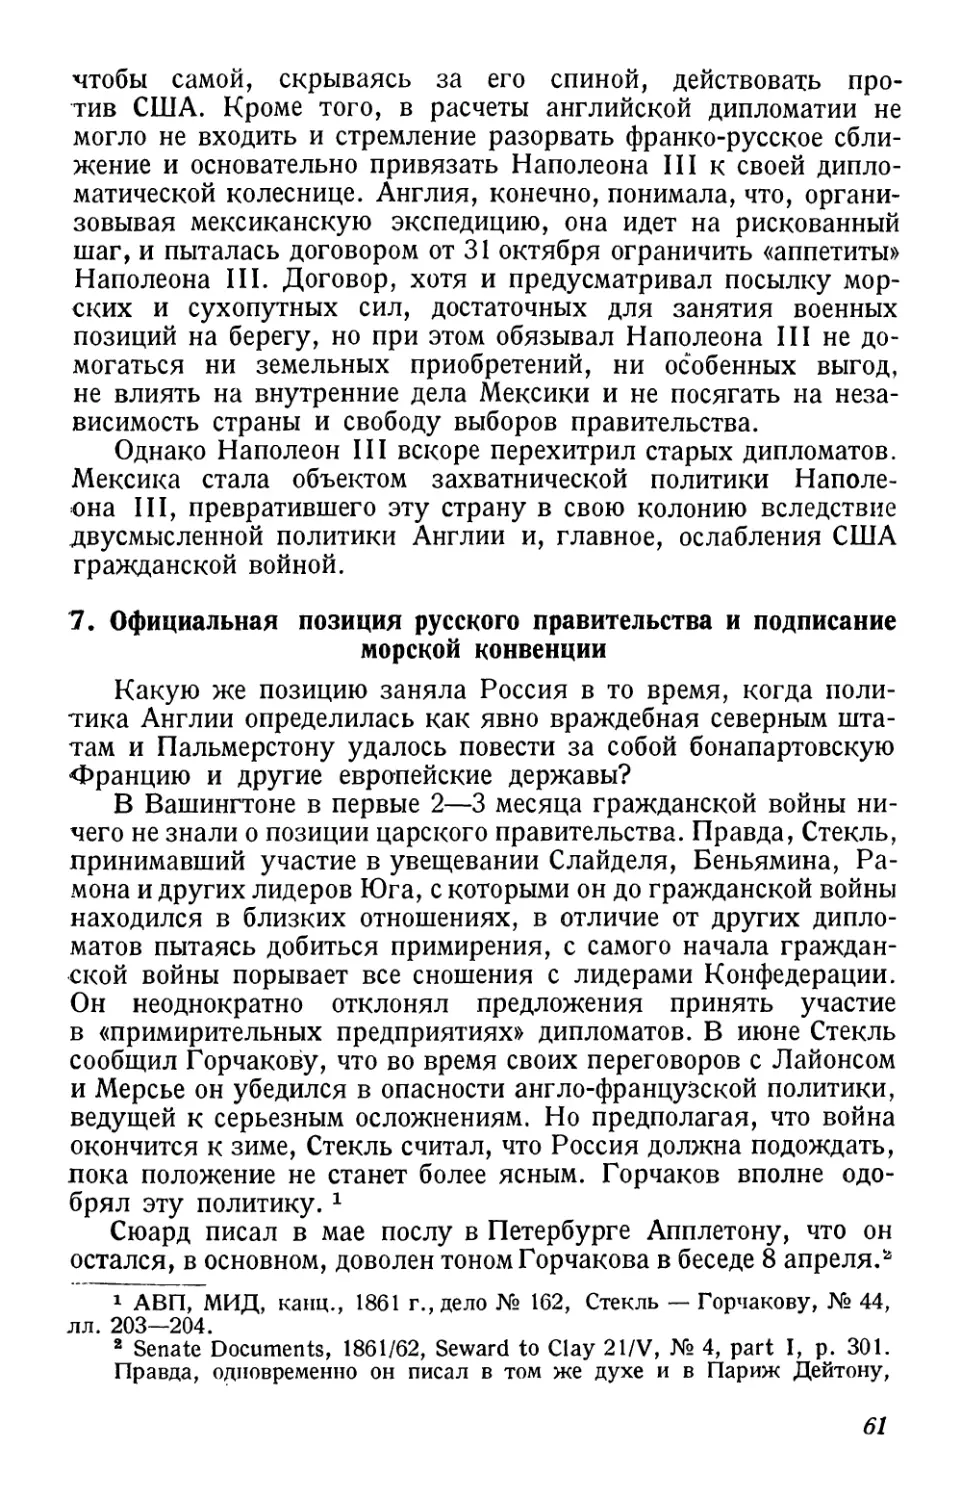 7. Официальная позиция русского правительства и подписание морской конвенции